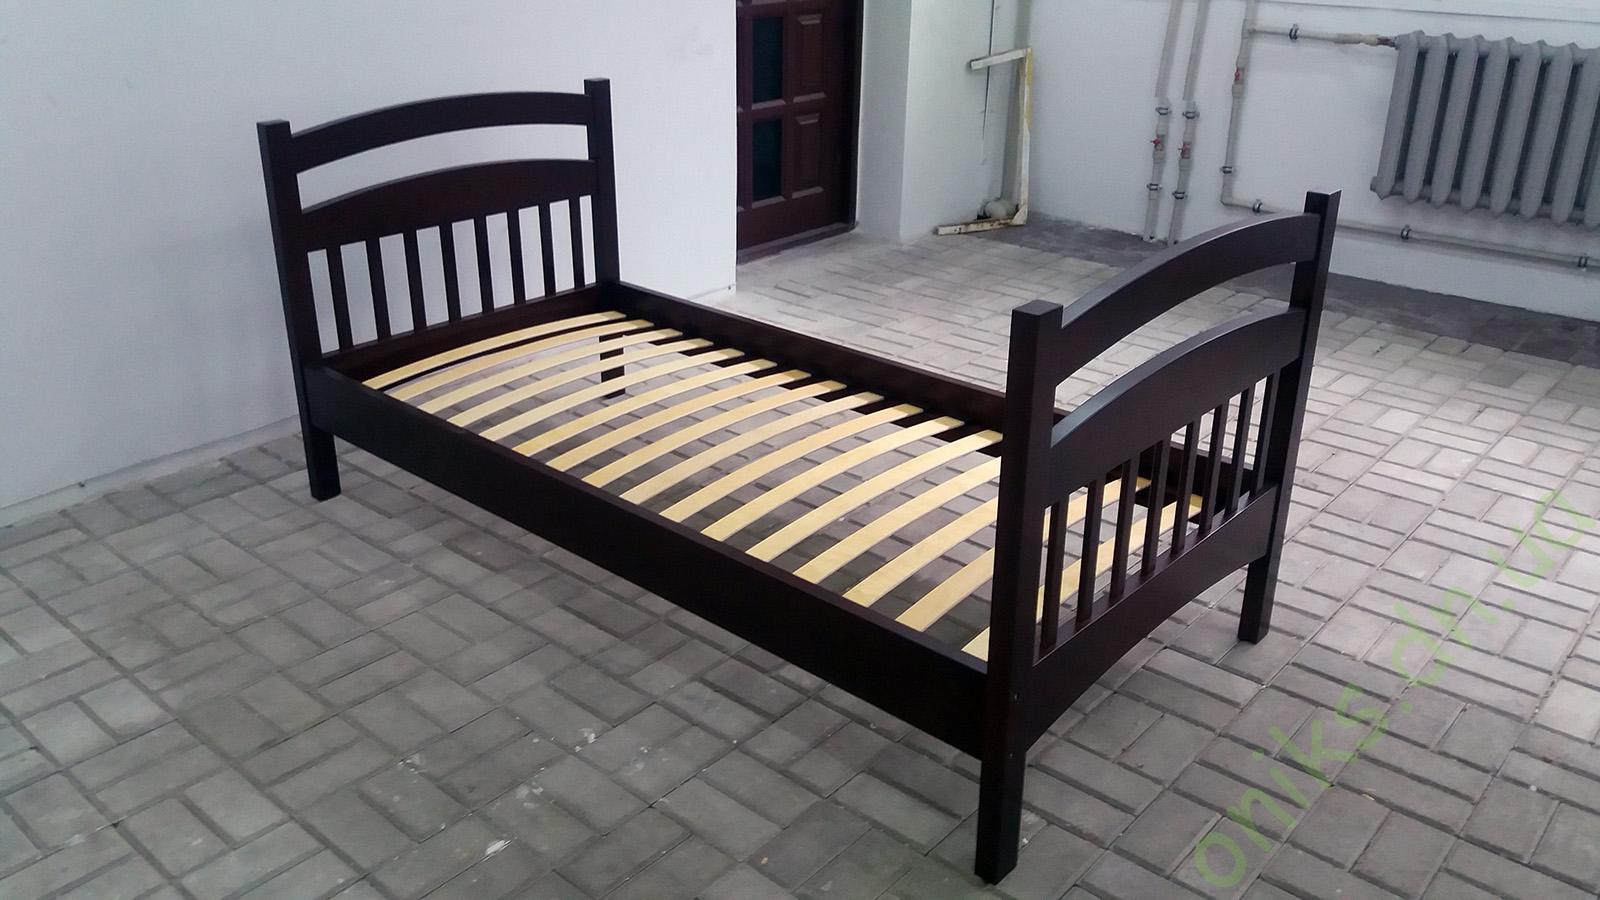 Кровать деревянная односпальная Донецк